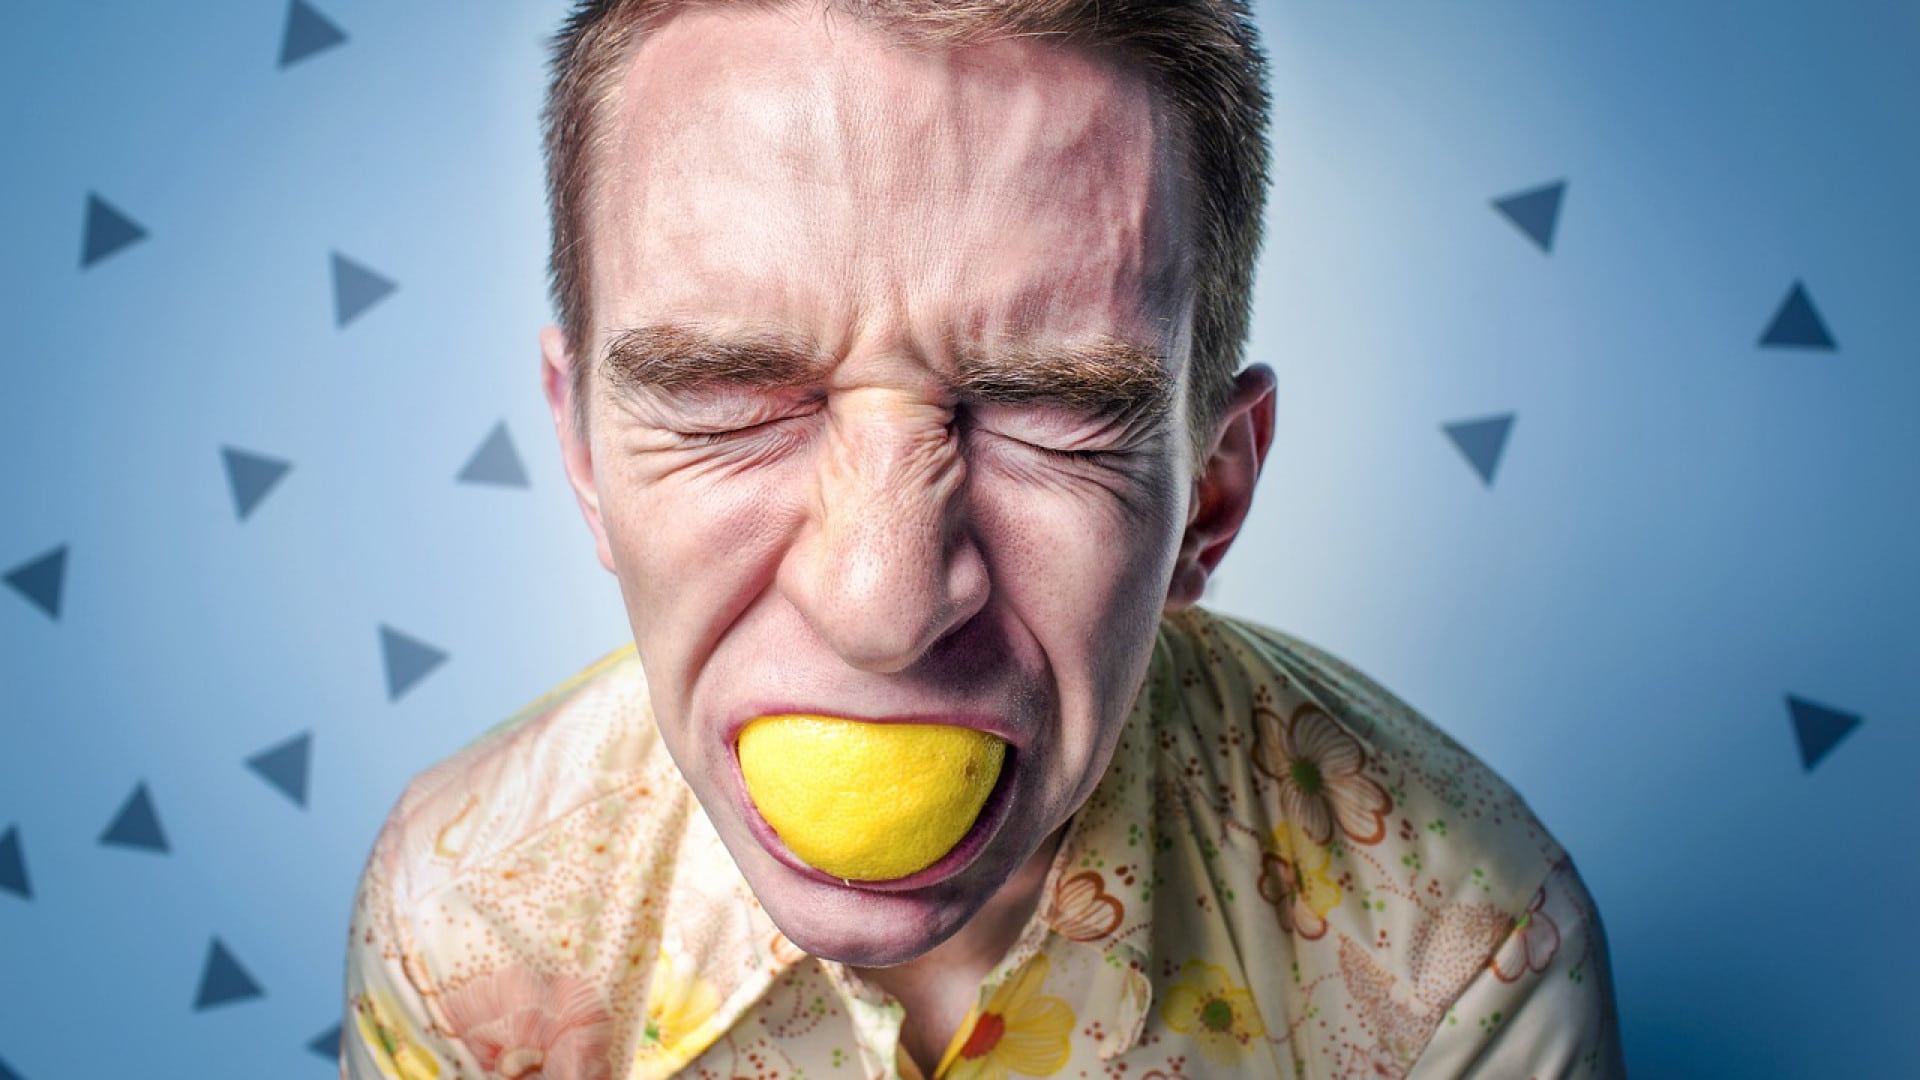 Homme grimaçant en mordant un citron sur un fond bleu avec des motifs triangulaires.